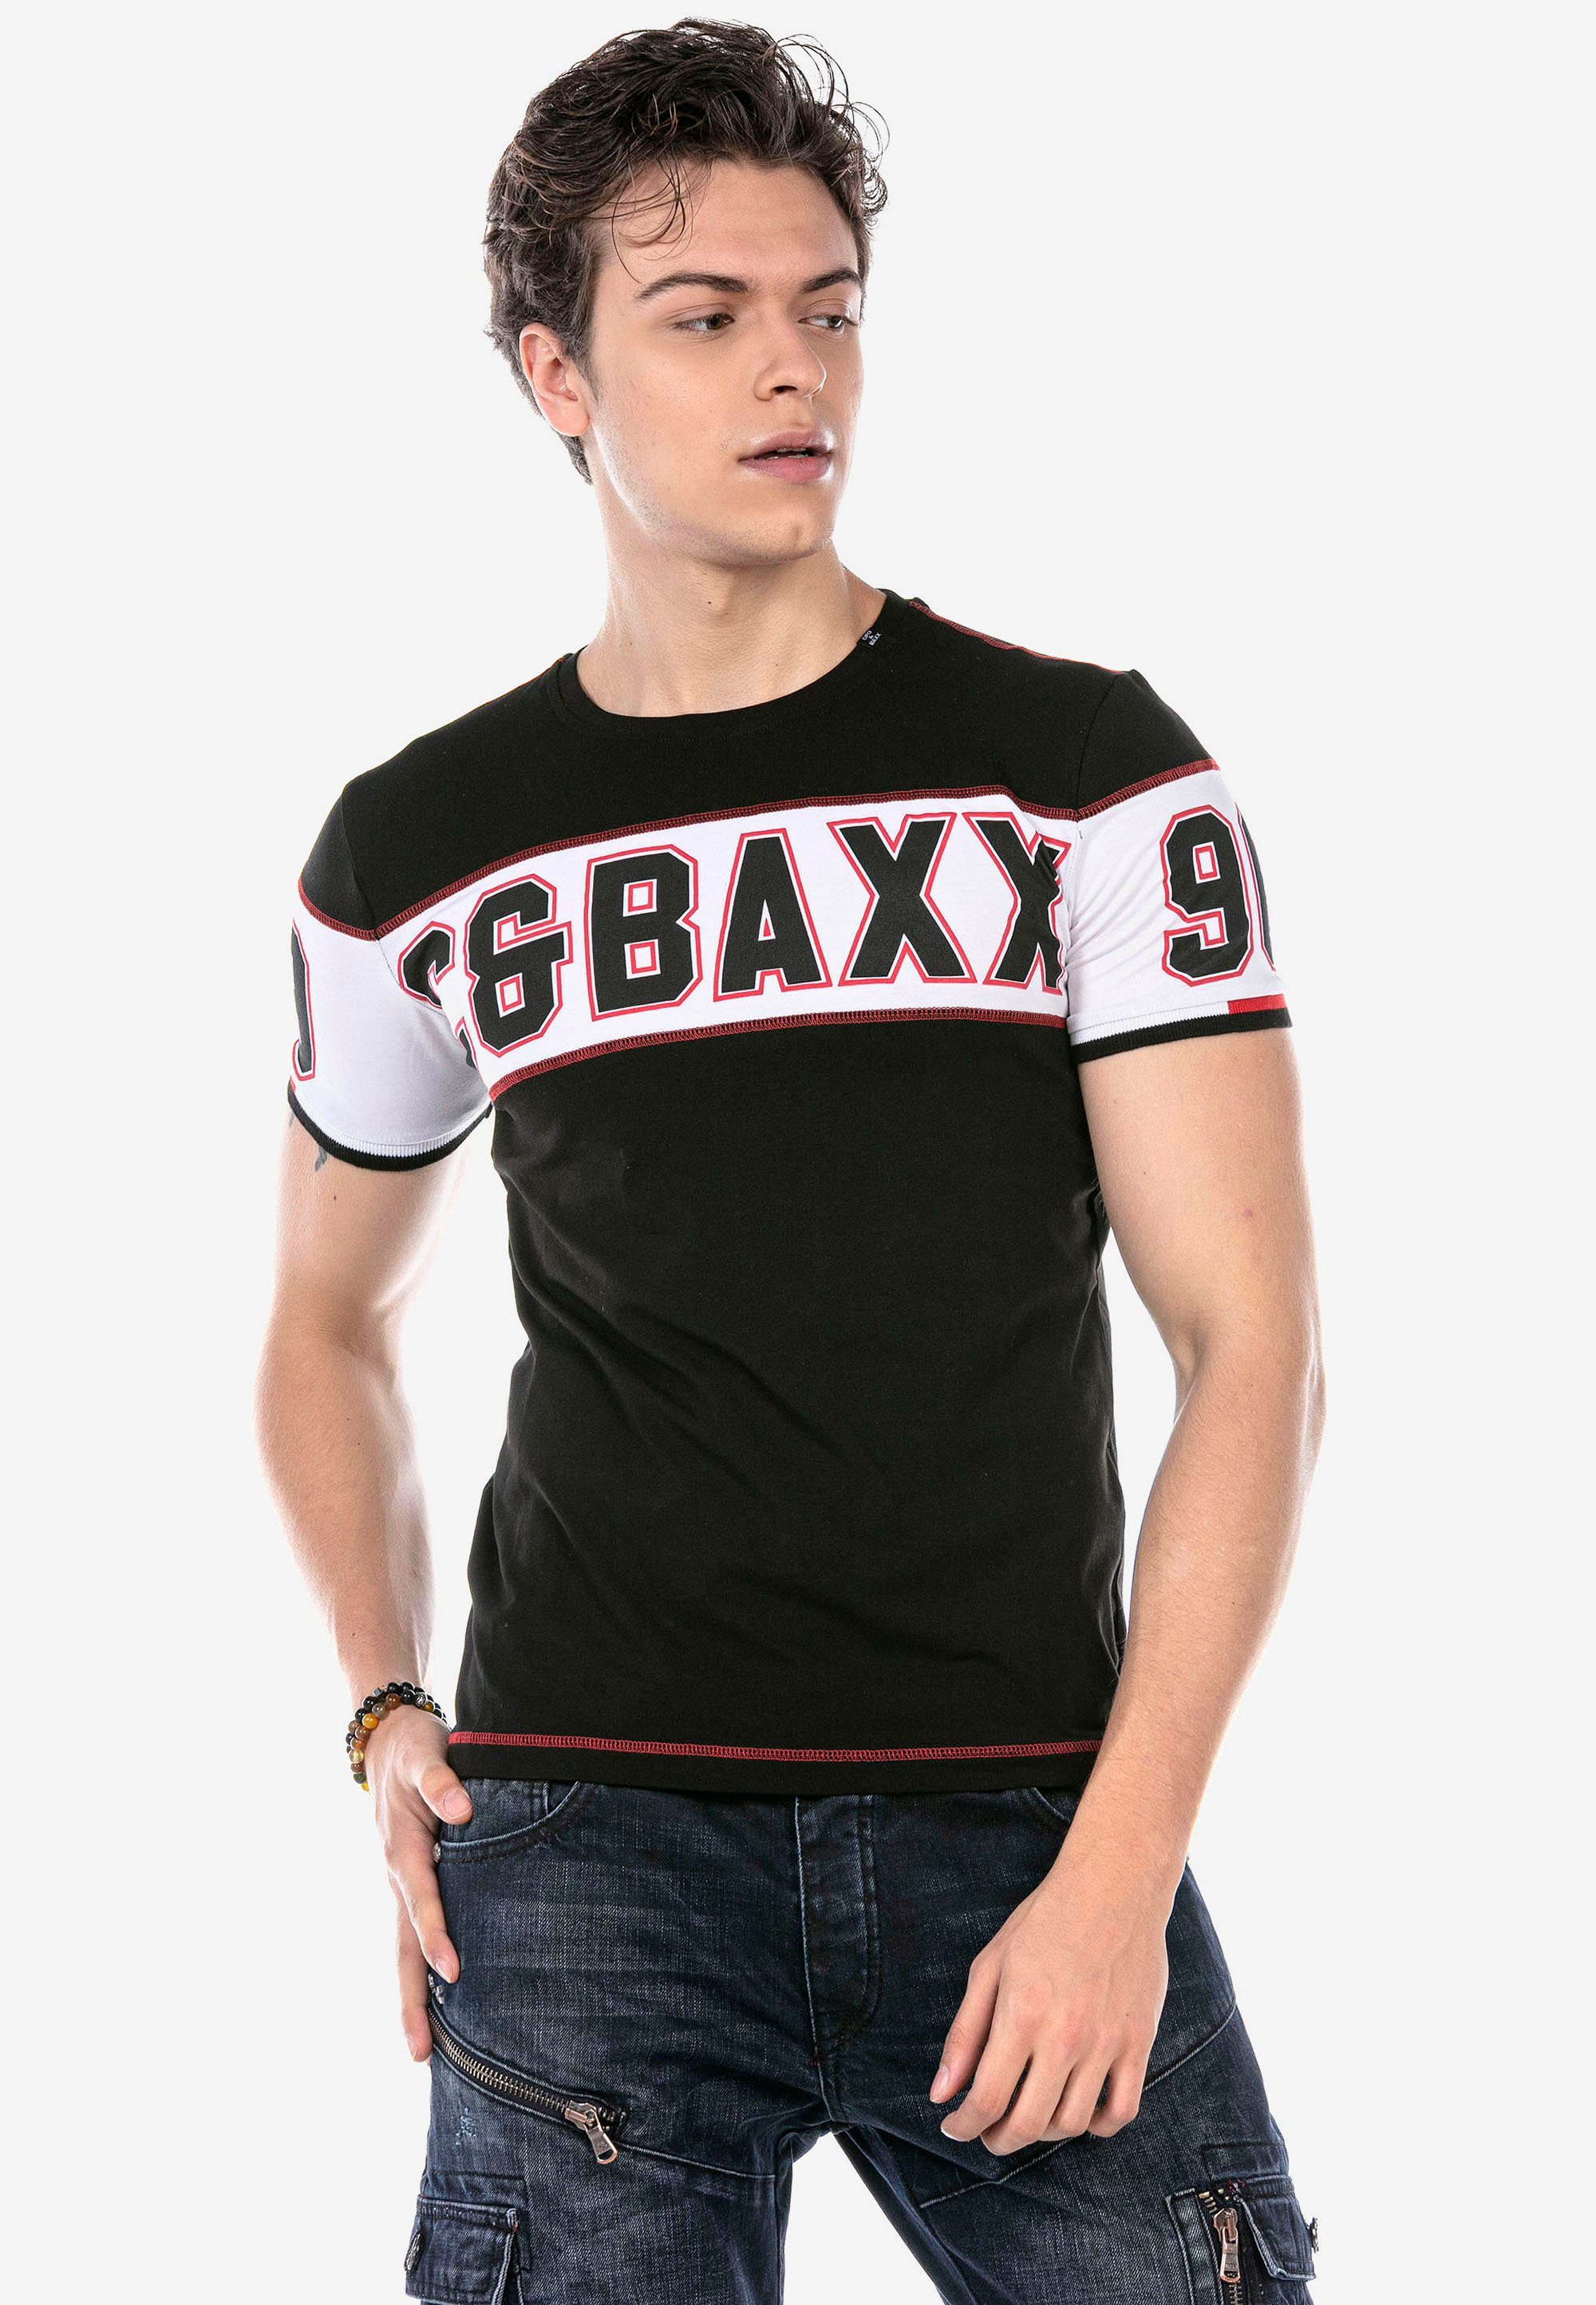 & mit Baxx schwarz T-Shirt Print auffälligem Cipo